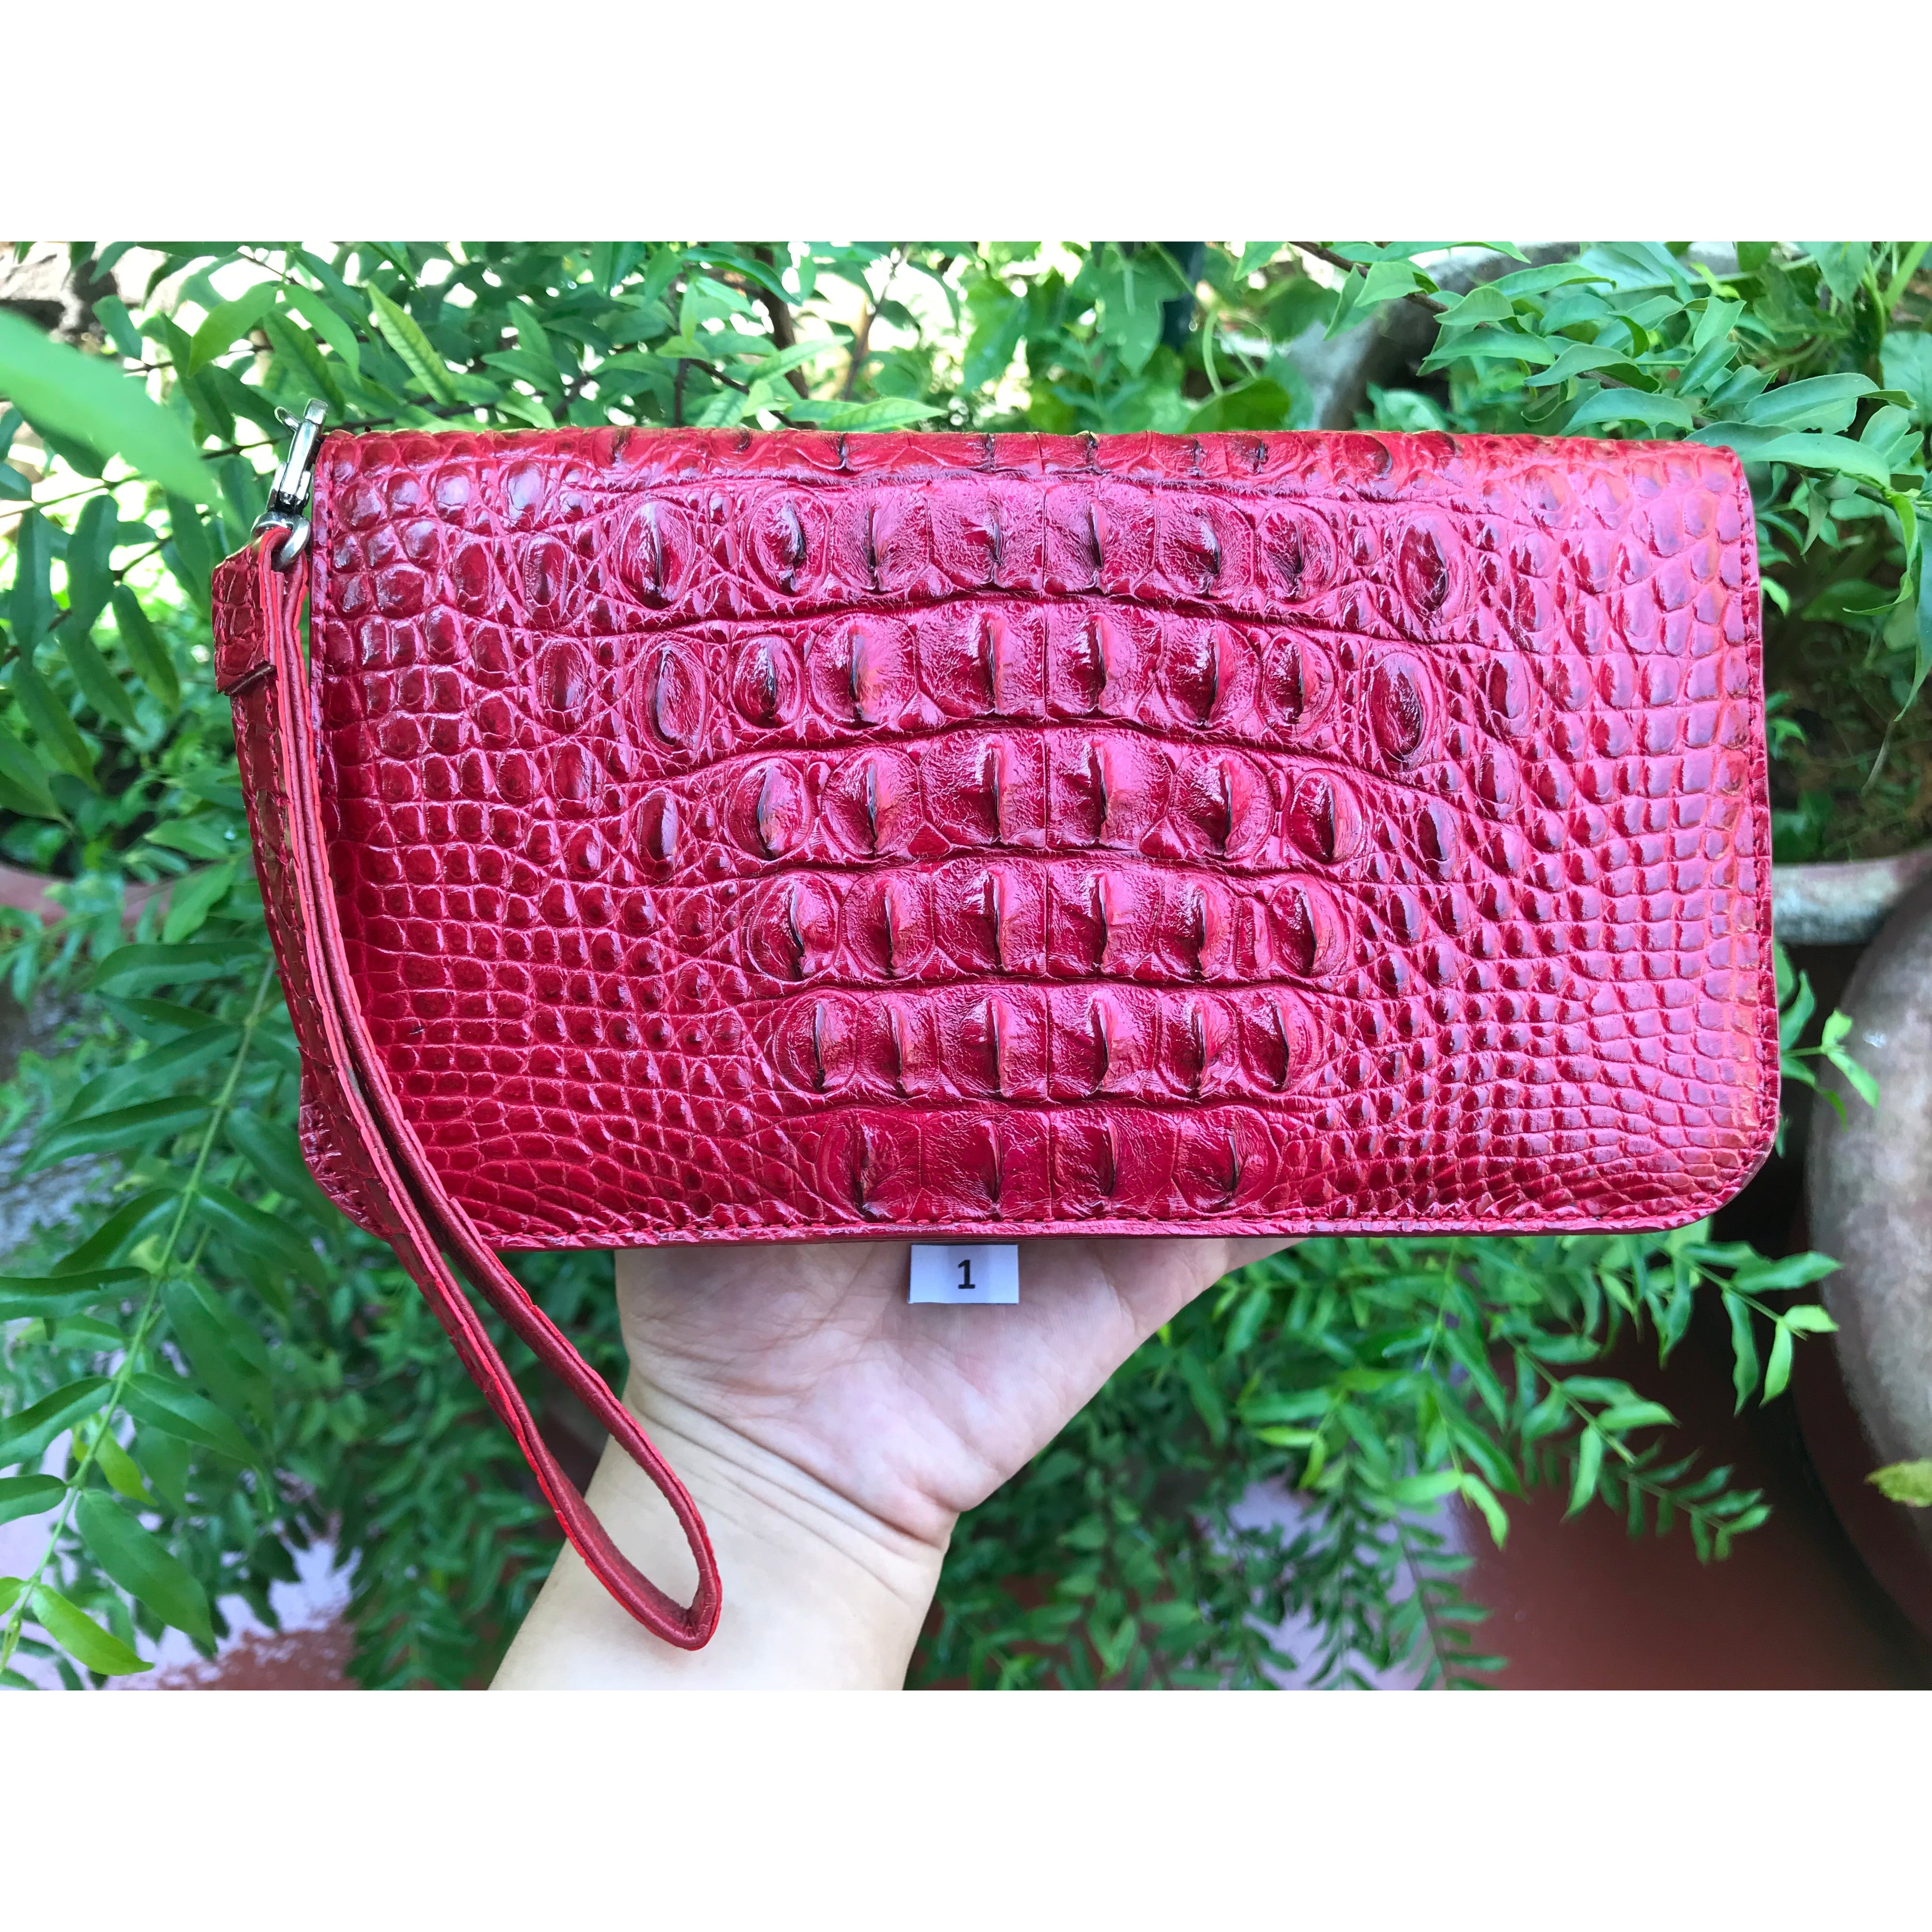 Women's Crocodile Leather Wallet